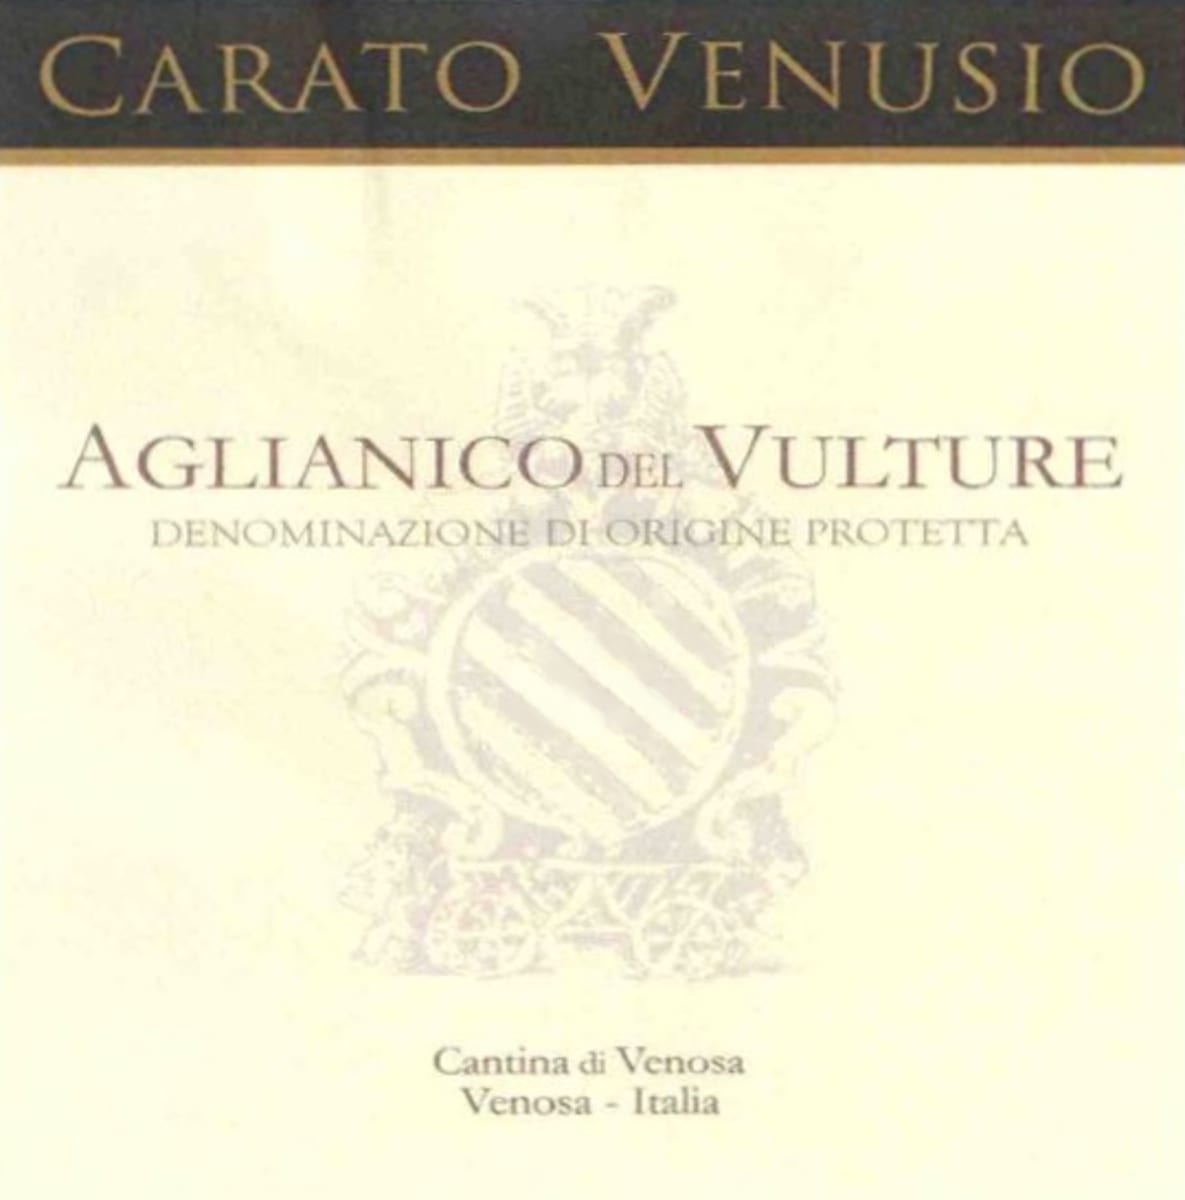 Cantina di Venosa Aglianico del Vulture Carato Venusio 2011 Front Label